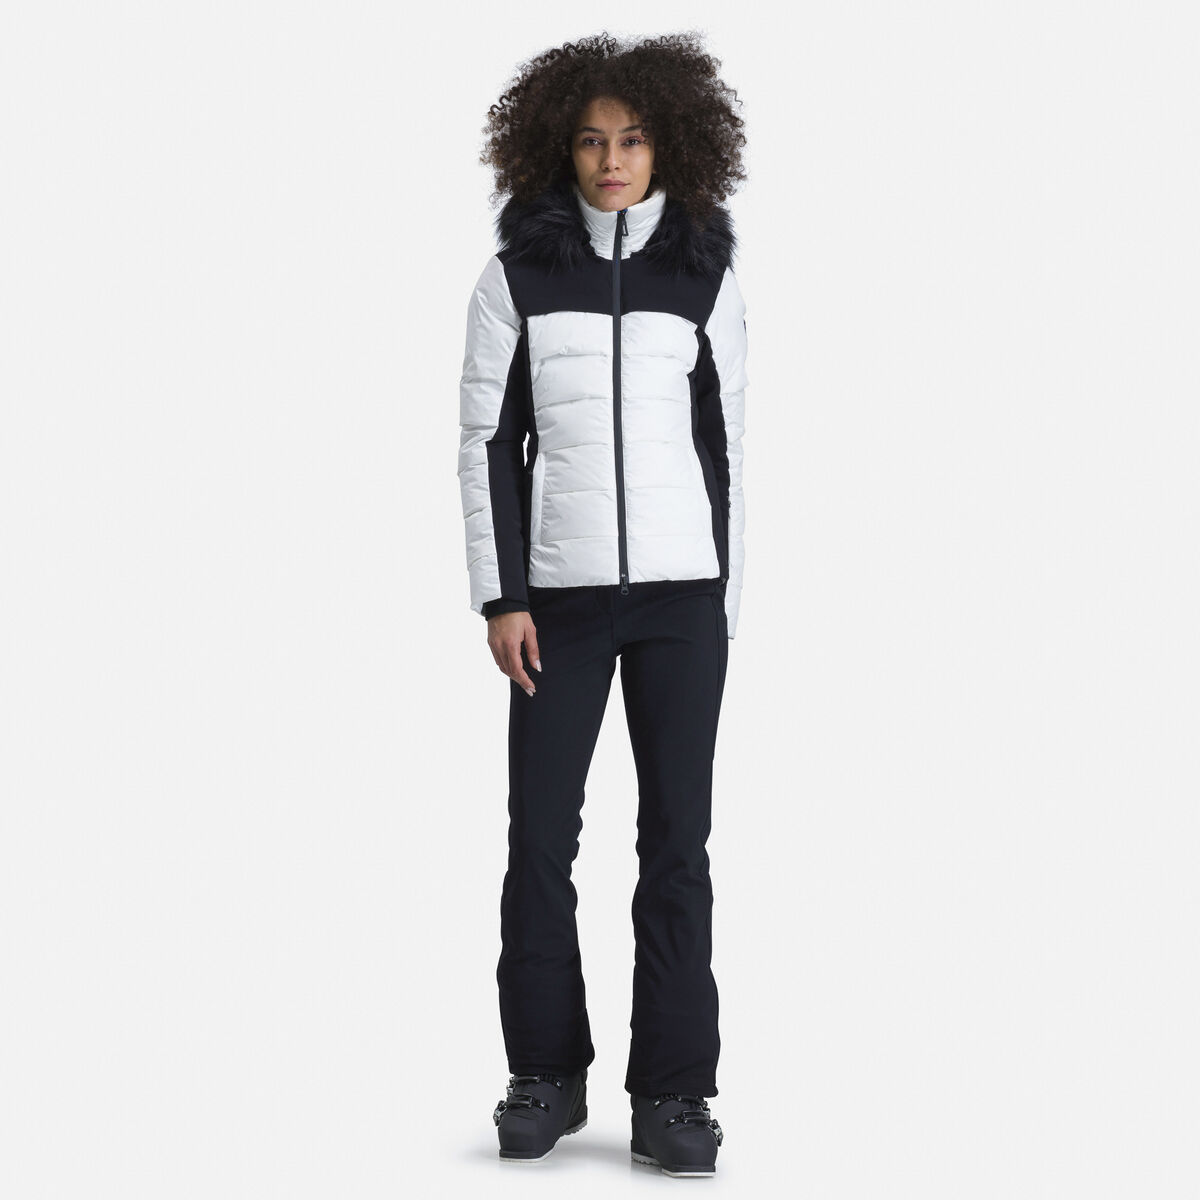 Rossignol Women's Surfusion ski jacket White